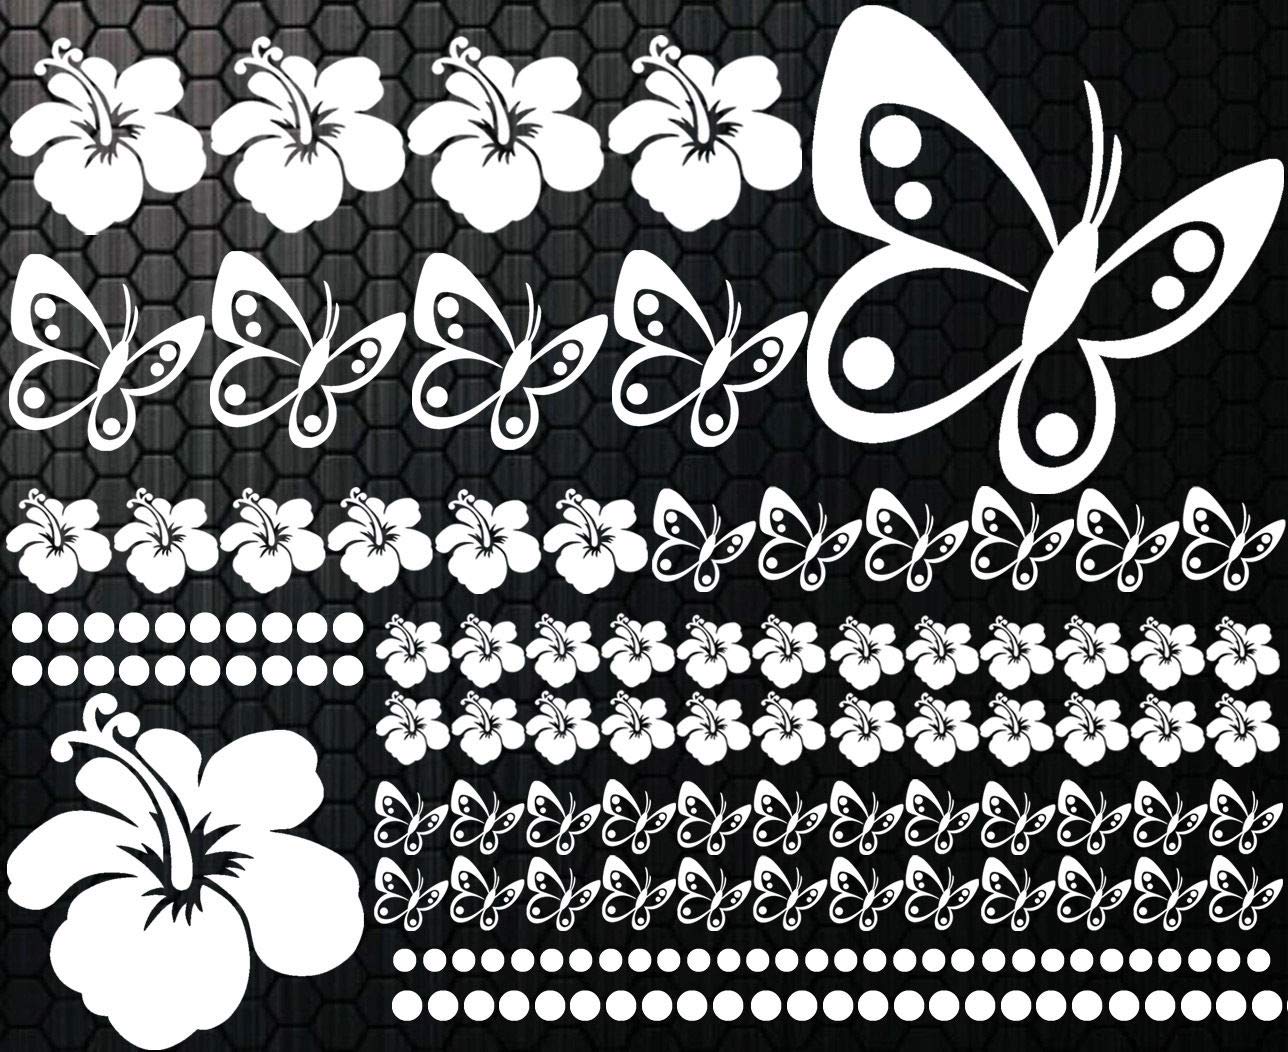 HR-WERBEDESIGN 108-teiliges Aufkleber Hibiskus x Blumen Schmetterlinge Hawaii Sterne WANDTATTOO von HR-WERBEDESIGN